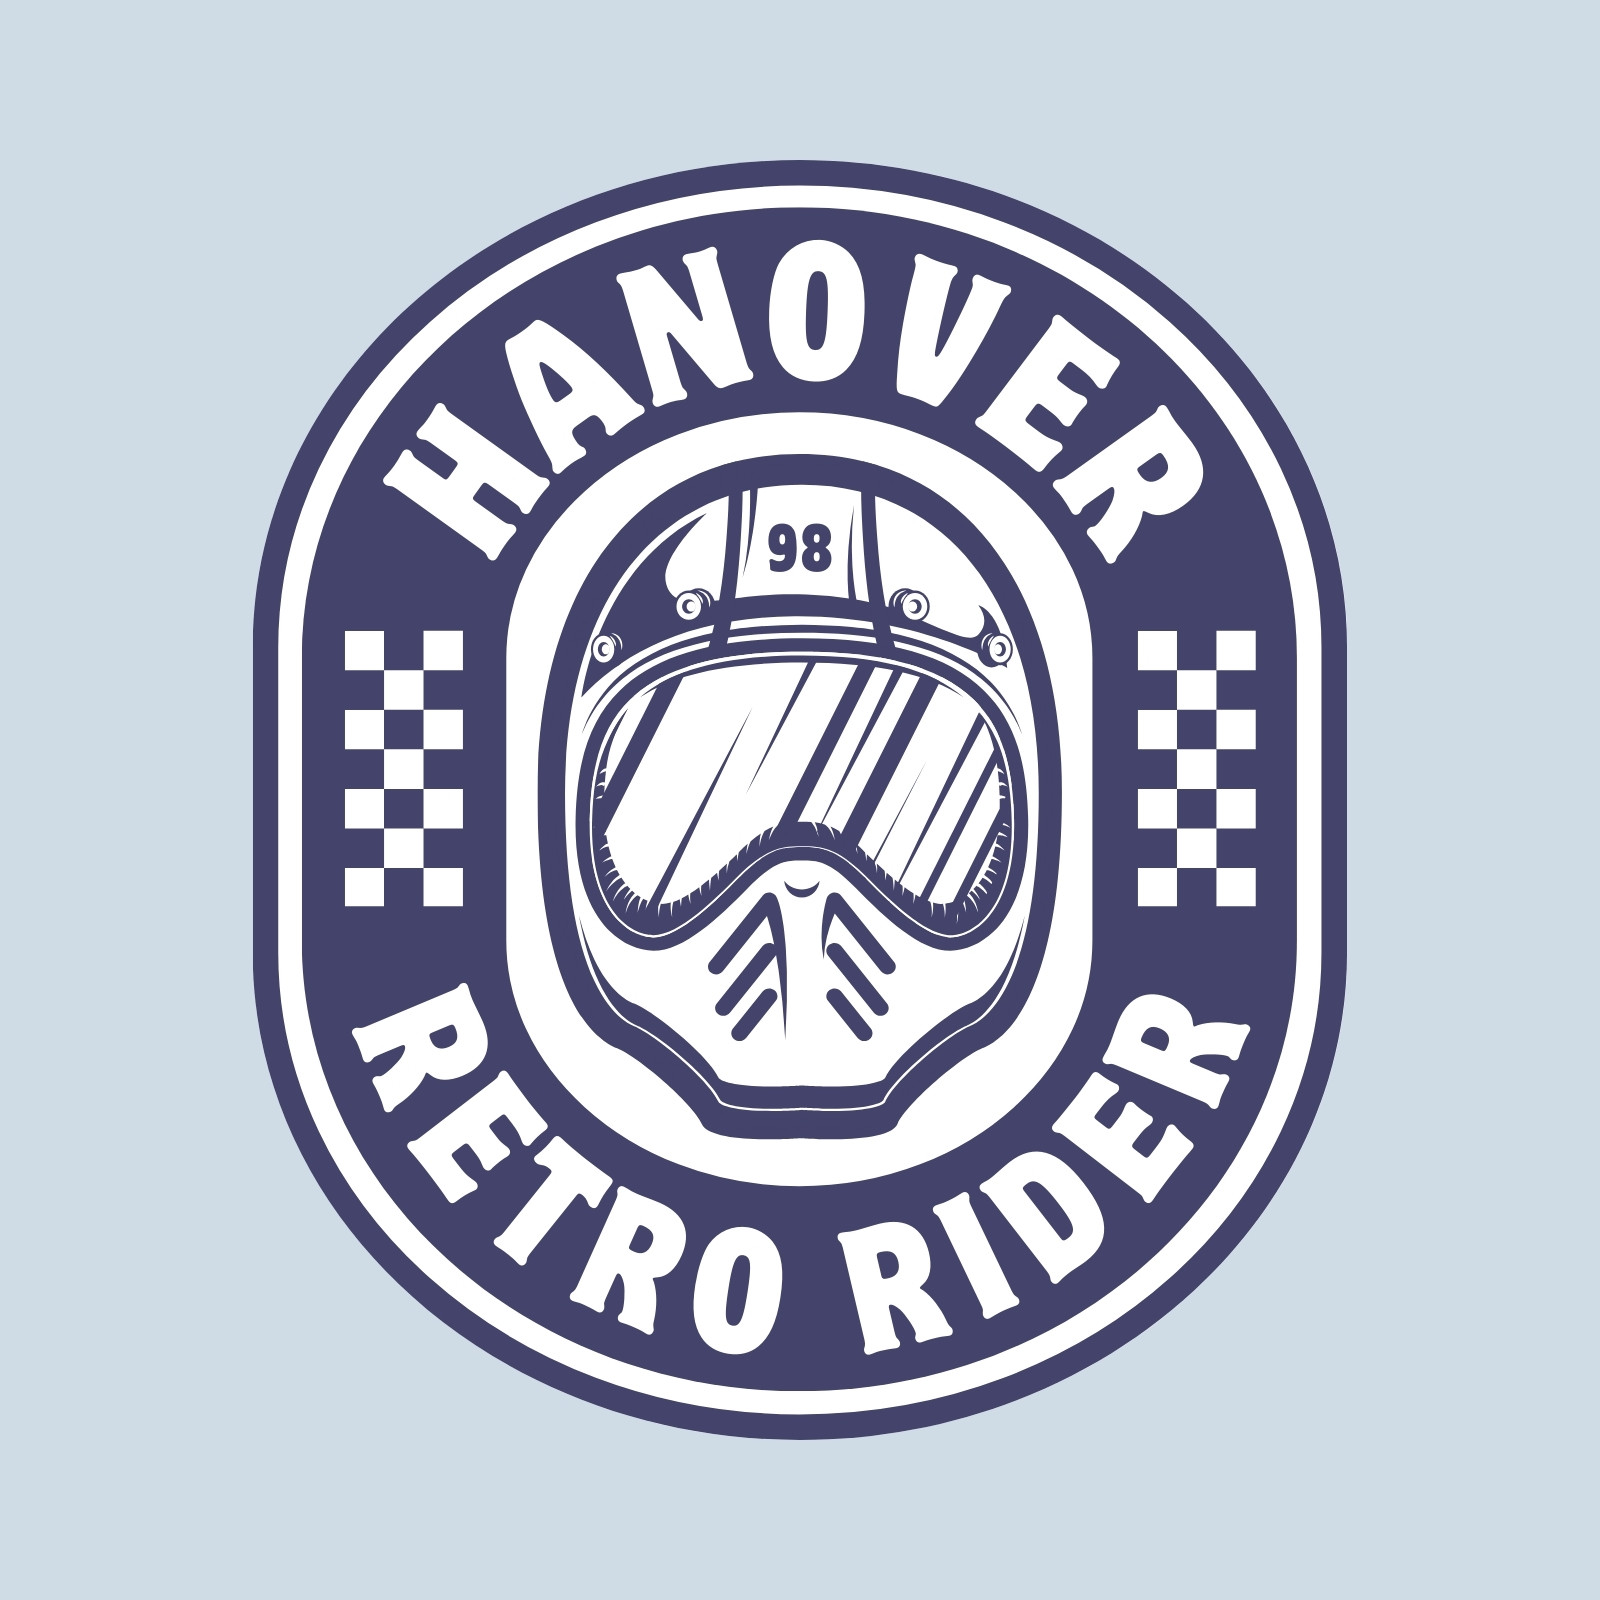 Knight rider logo